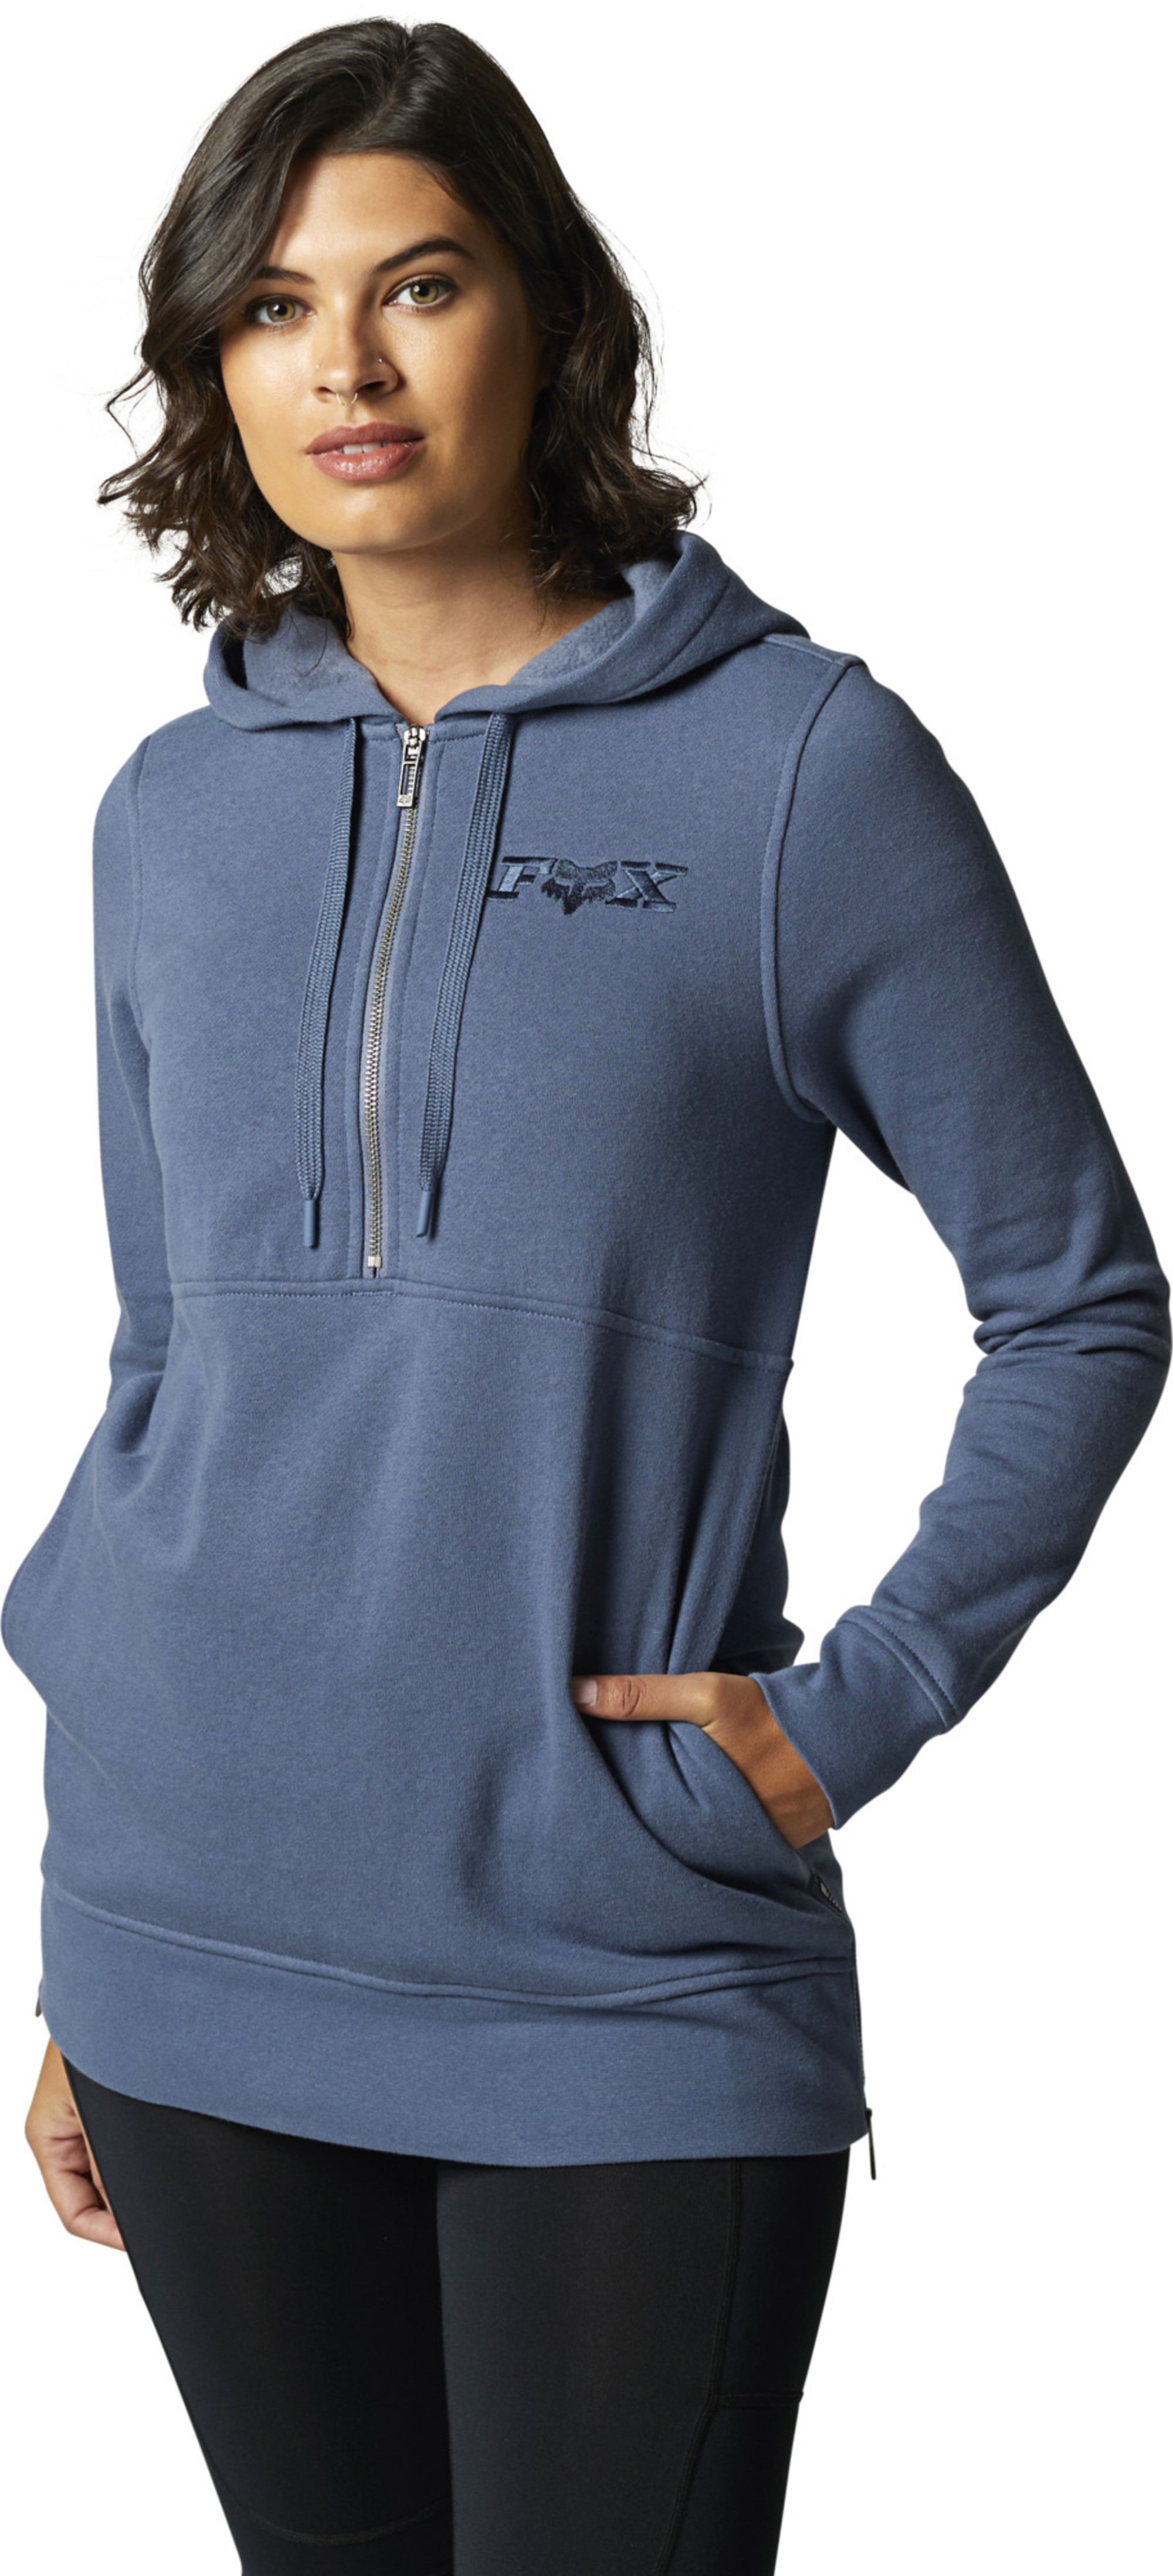 fox racing hoodies for womens calibration zip fleece